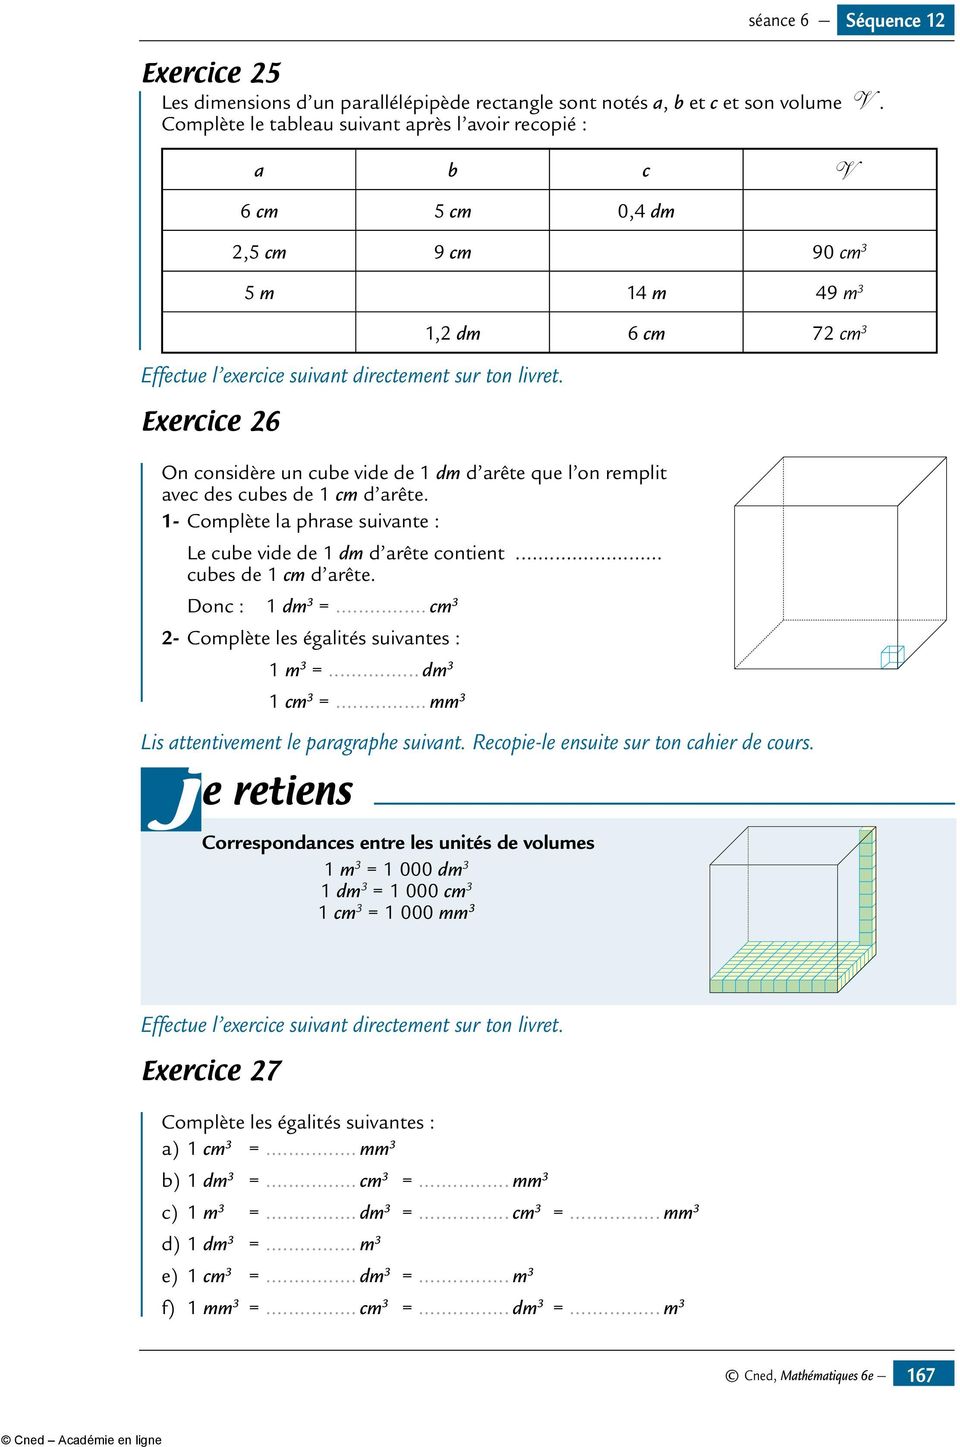 Exercice 26 1,2 dm 6 cm 72 cm 3 On considère un cube vide de 1 dm d arête que l on remplit avec des cubes de 1 cm d arête. 1- Complète la phrase suivante : Le cube vide de 1 dm d arête contient.